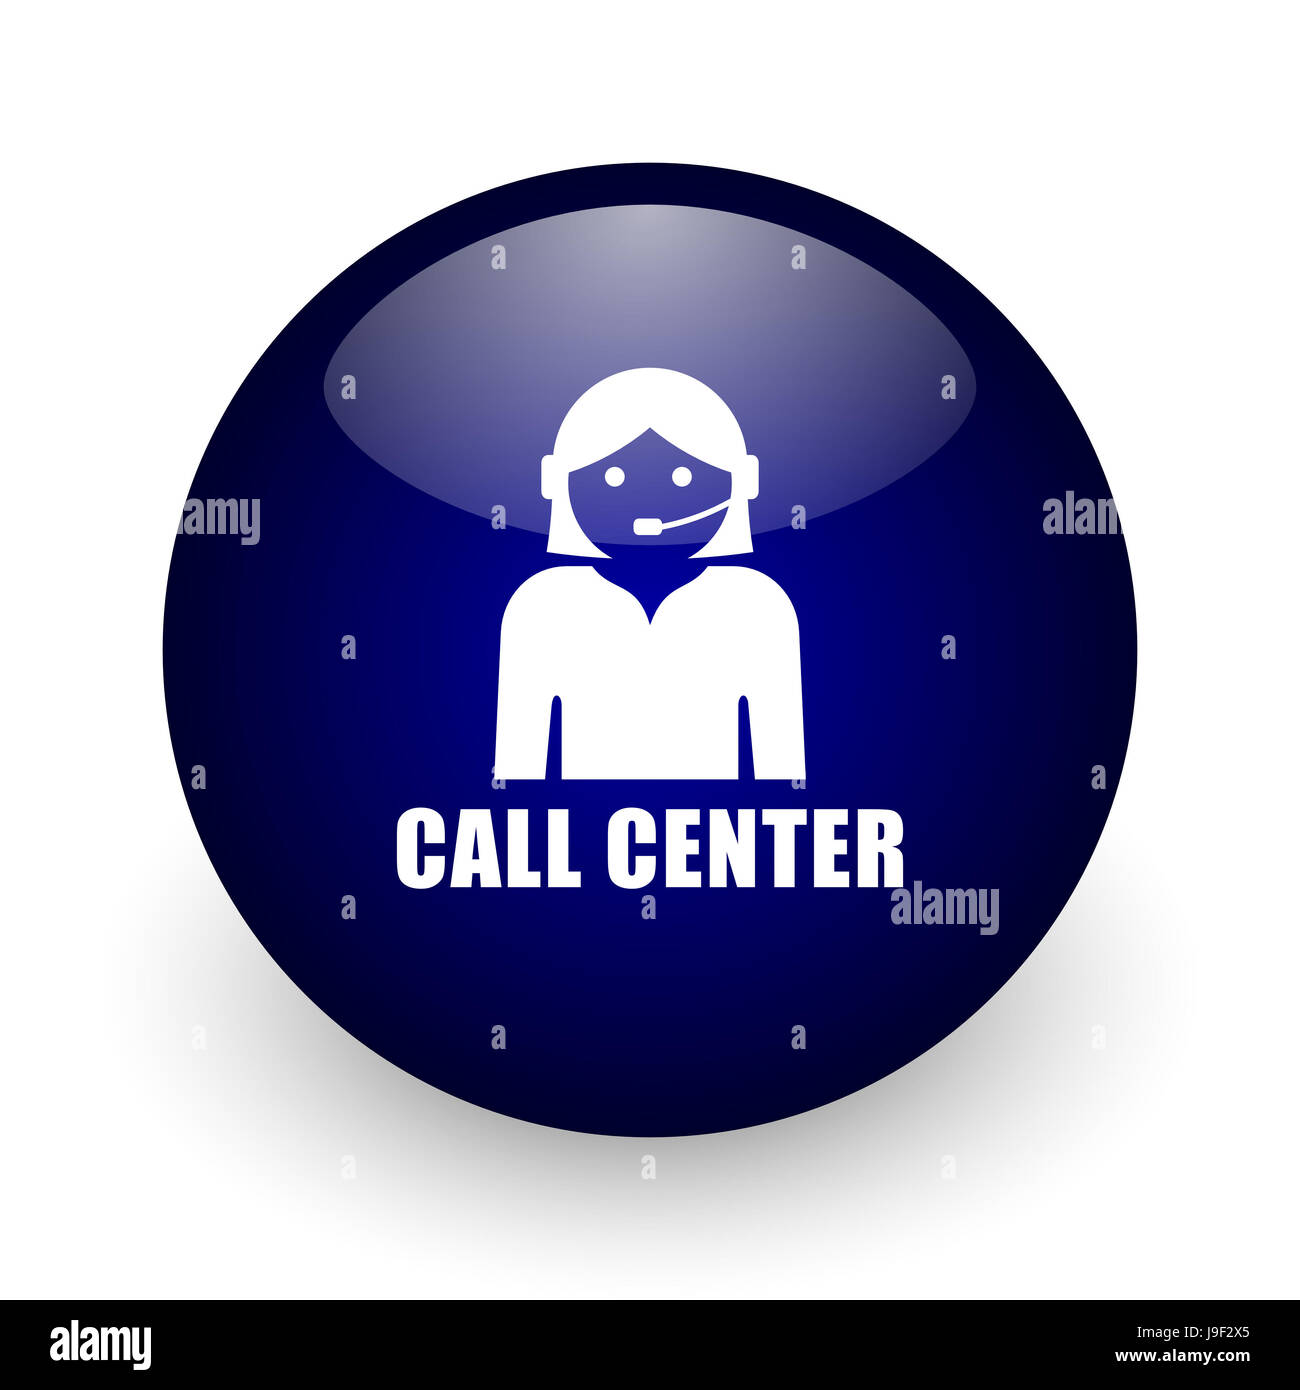 call center icon 3d